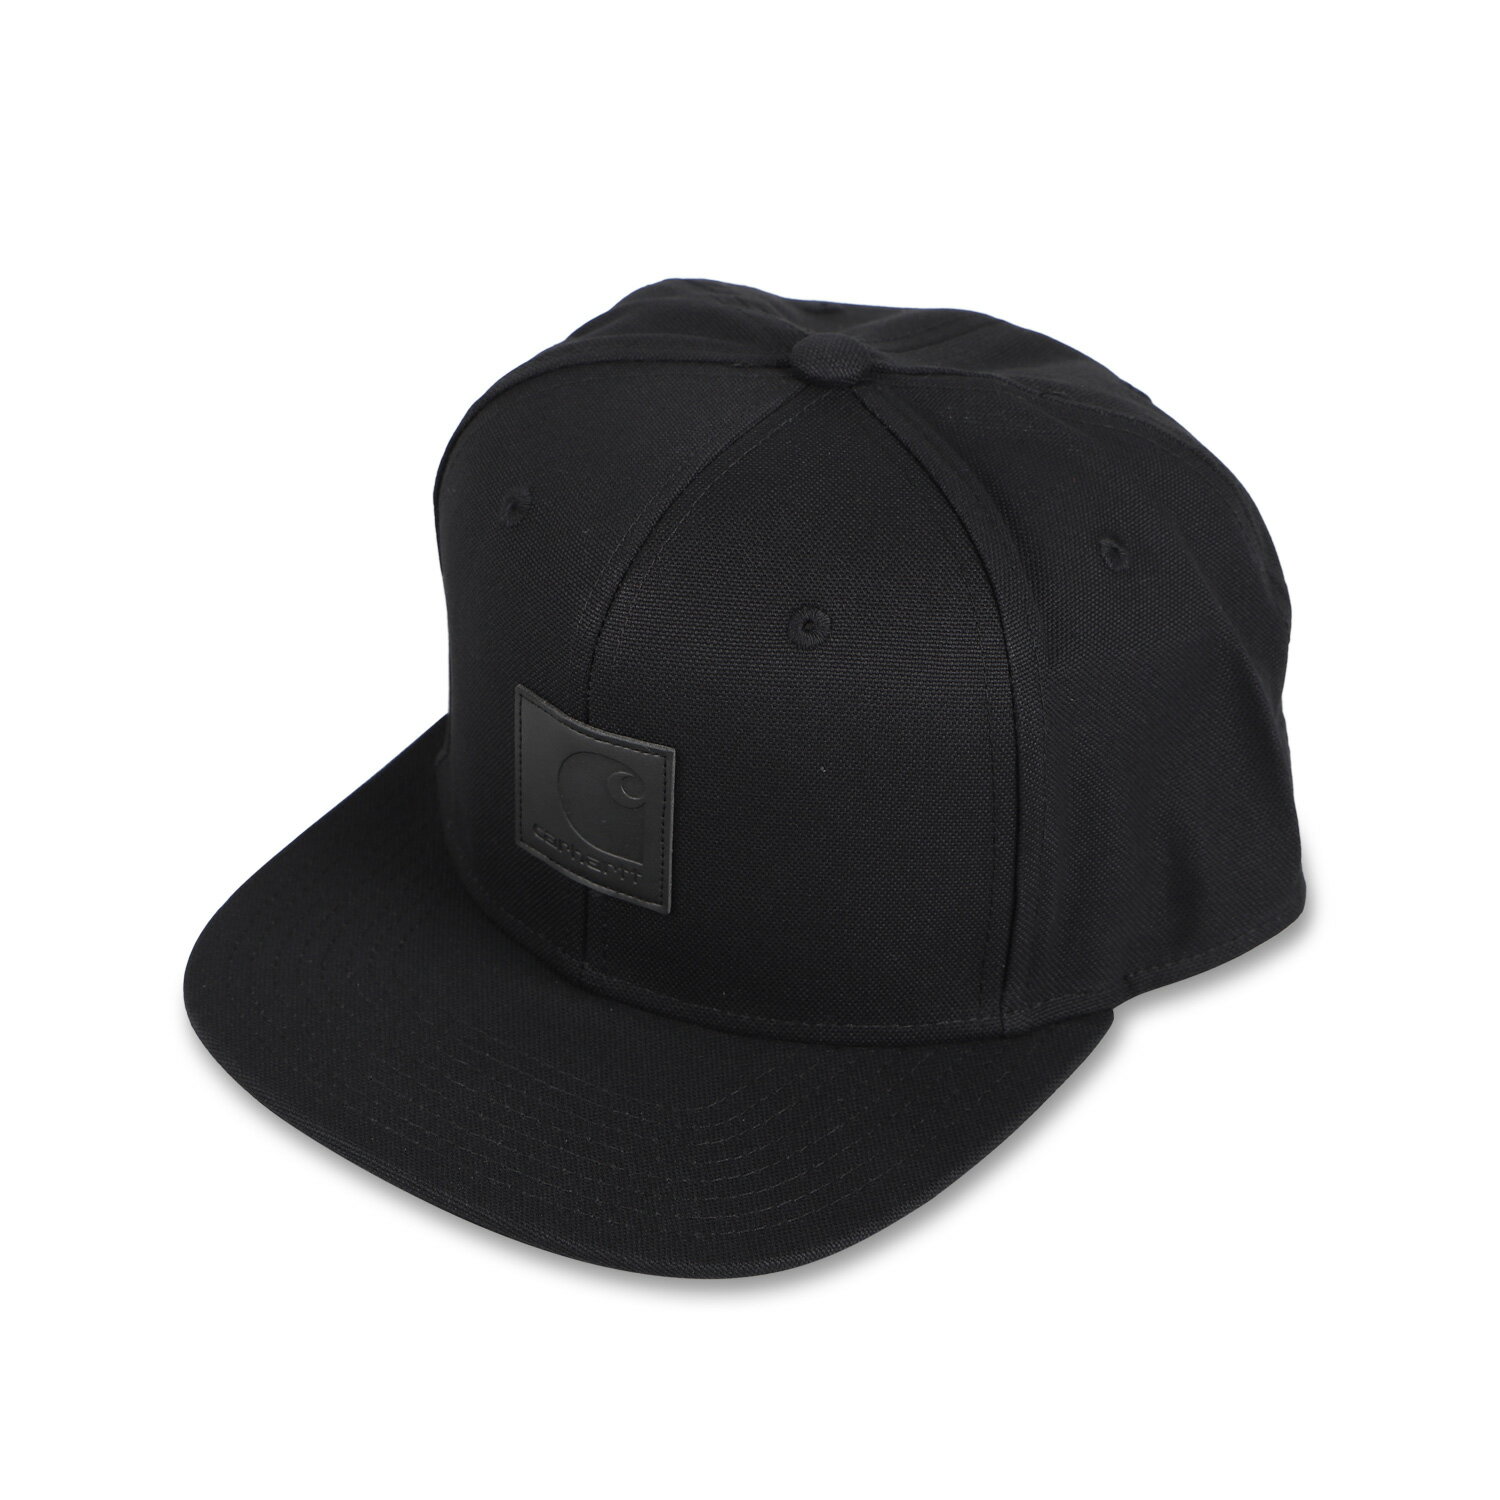 カーハート  帽子 メンズ carhartt WIP LOGO CAP カーハート キャップ 帽子 スナップバックキャップ メンズ レディース ブラック ダーク ネイビー ブラウン 黒 OCWI0230991